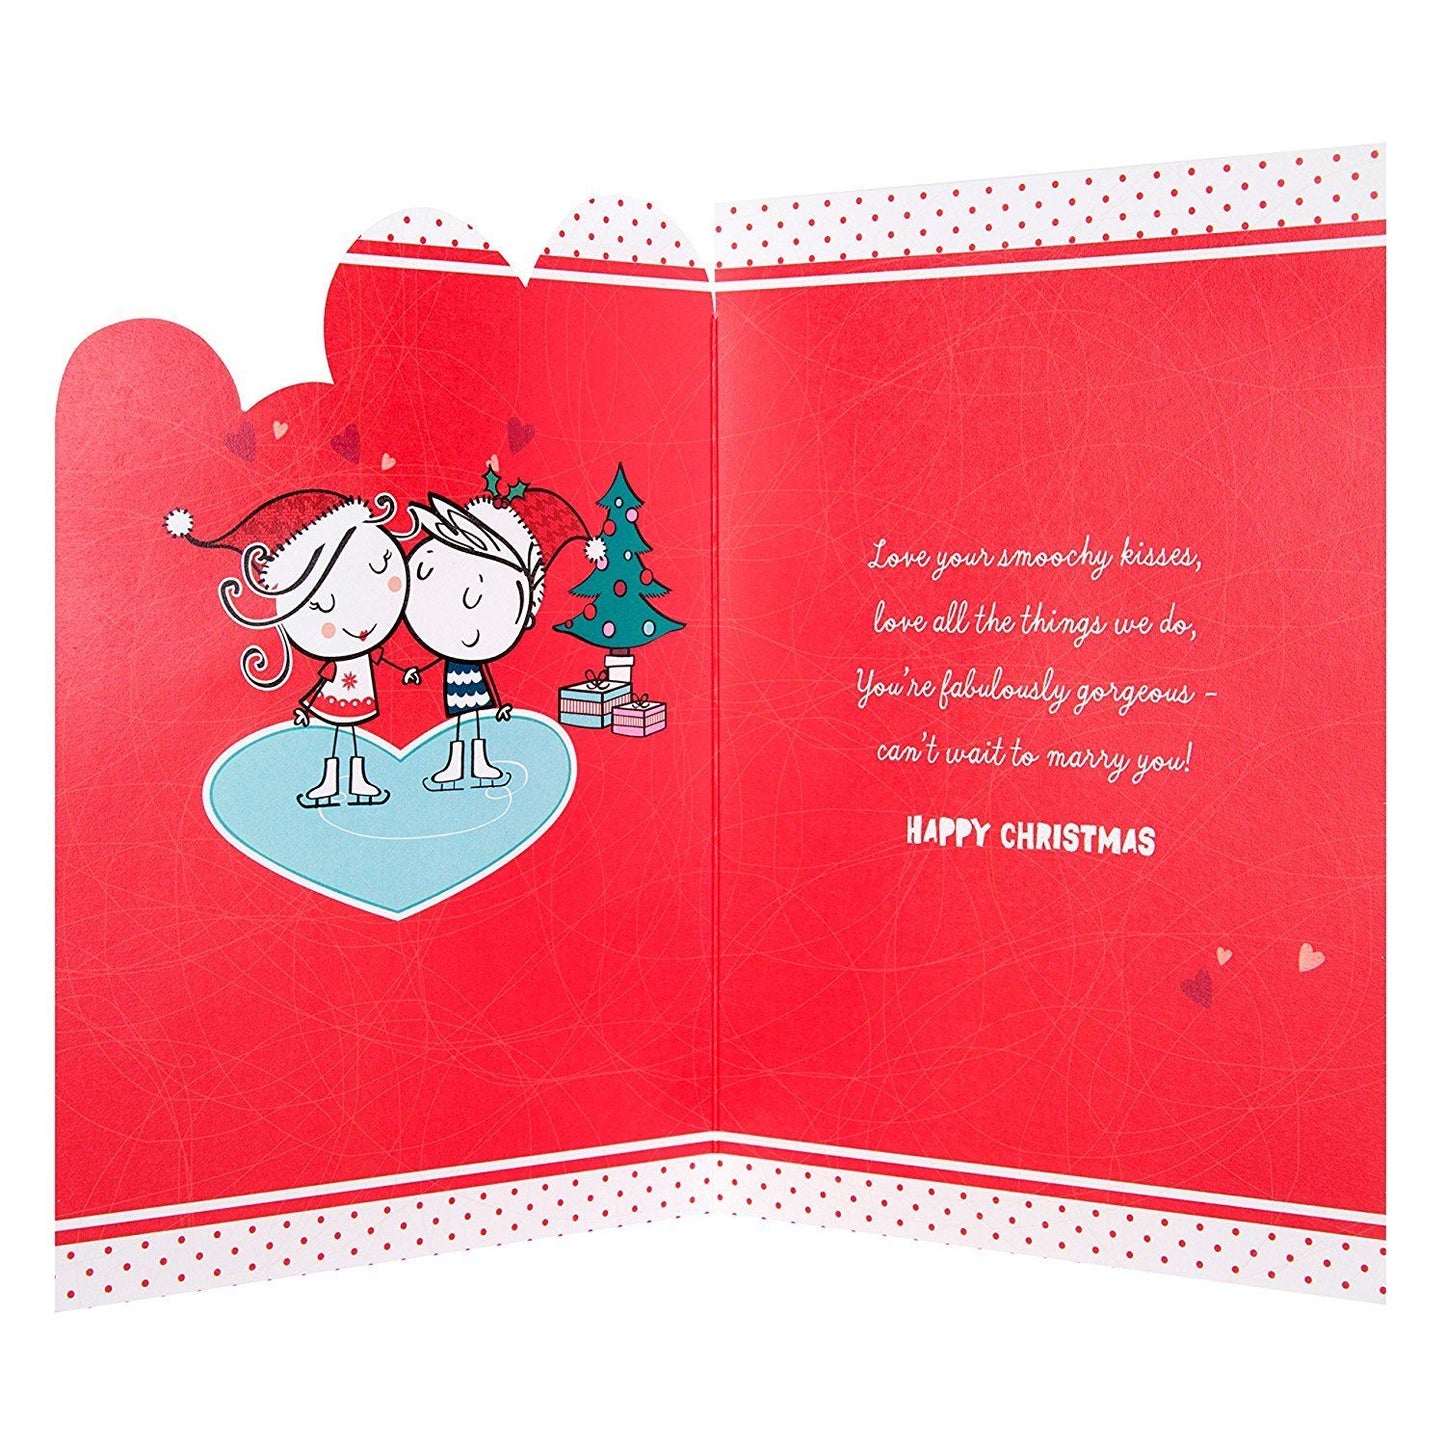 Fiancee Christmas Card 'Love You' 